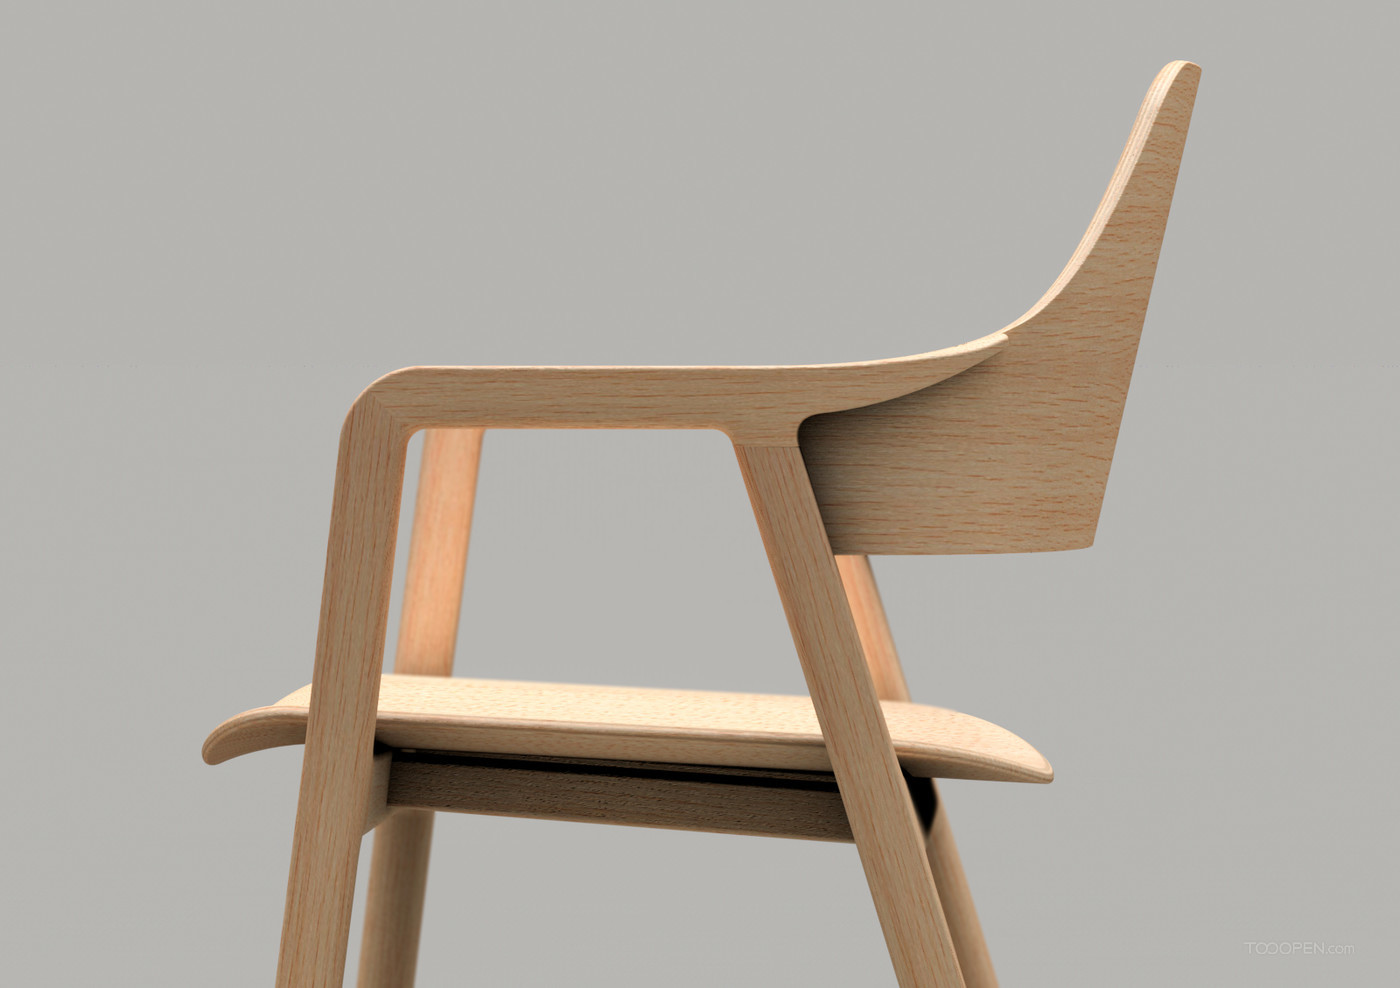 國外創意極簡座椅家具產品設計欣賞-01